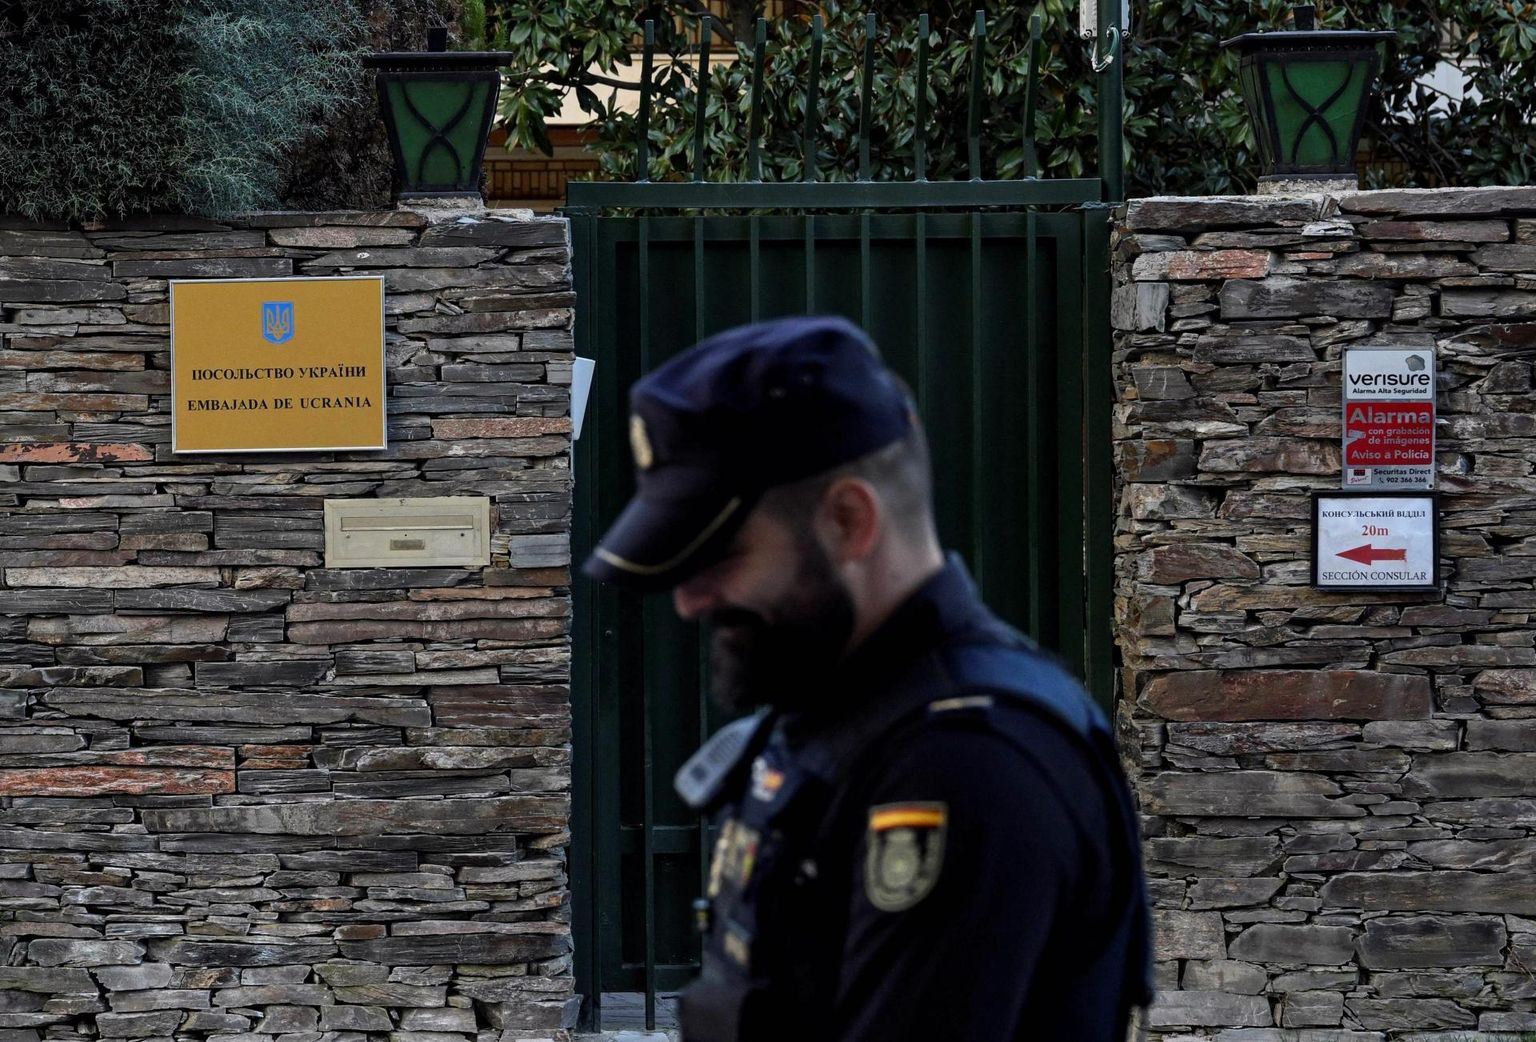 Полиция возле посольства Украины в Мадриде после того, как в посольство прибыло письмо с бомбой.